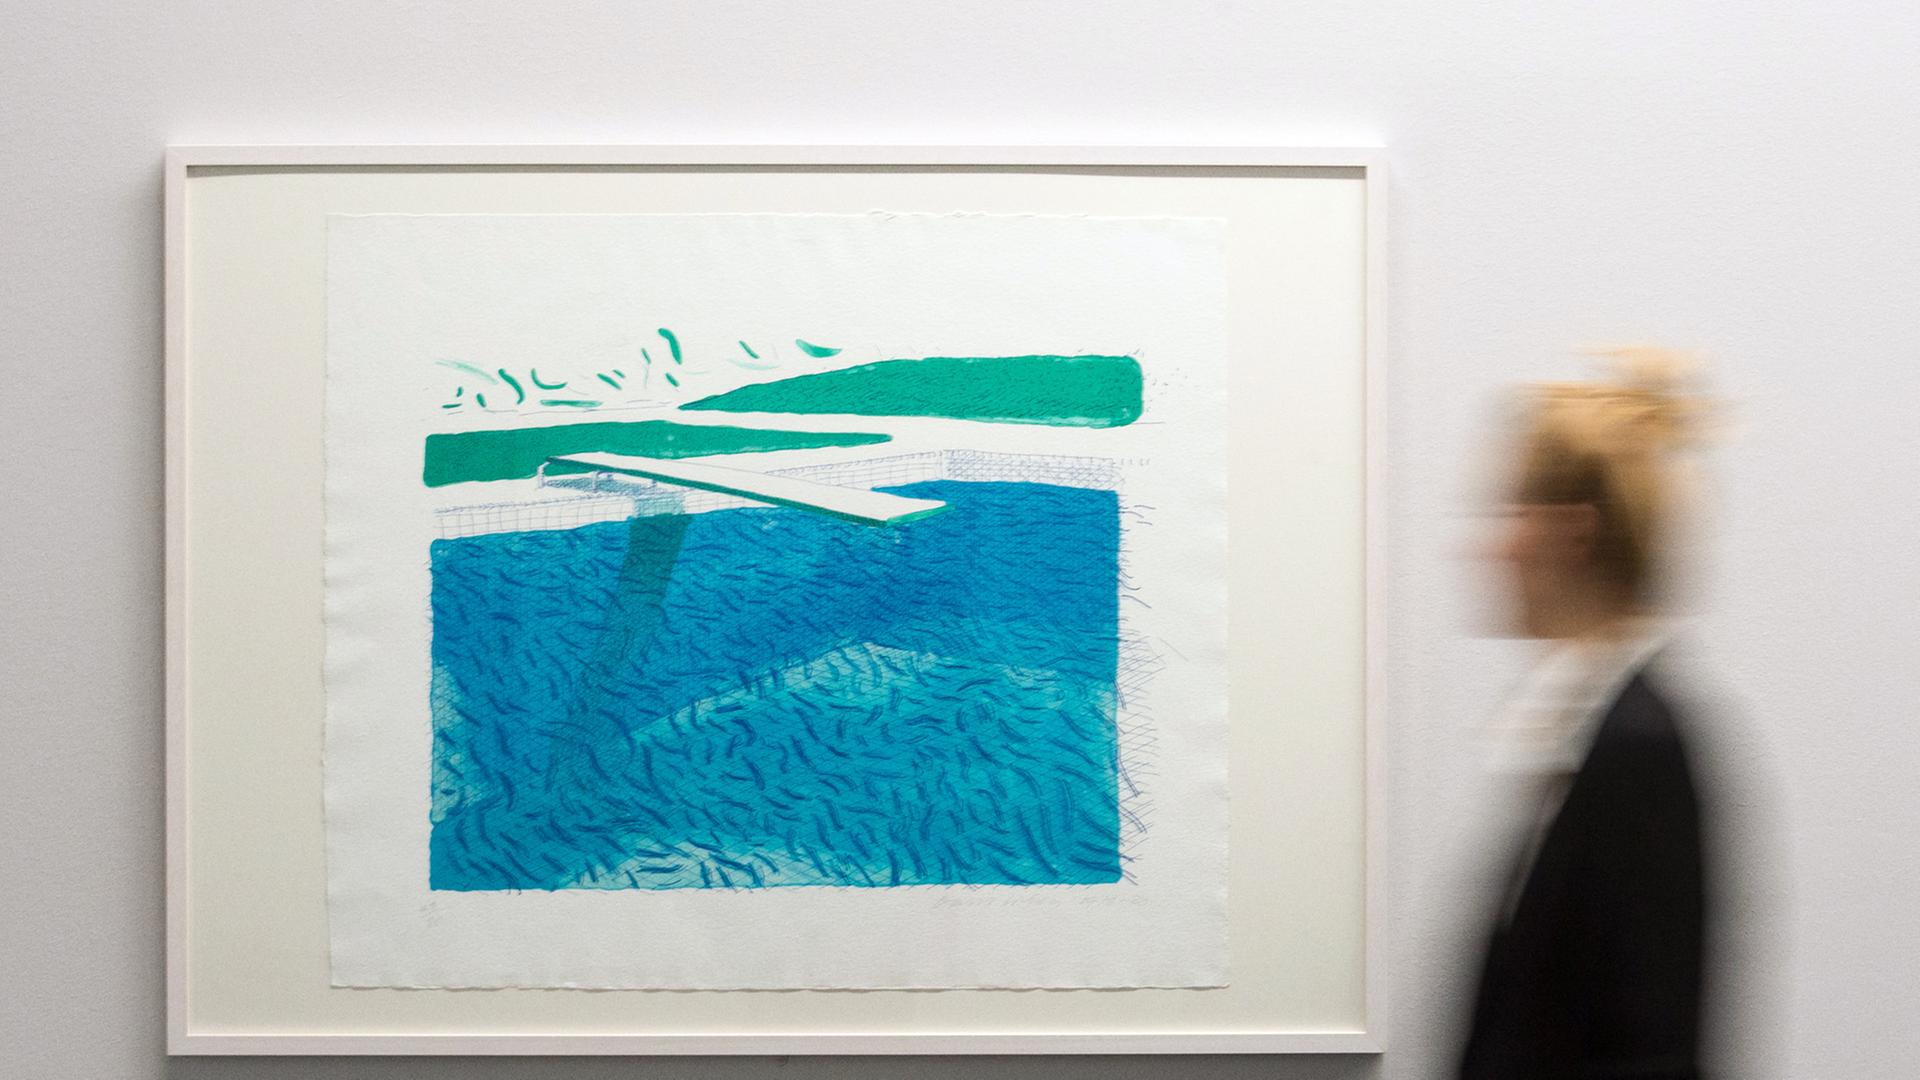 Eine Frau betrachtet das Bild "Lithographic Water Made of Lines, Crayon, an Two Blue Washes" (1978/80) von David Hockney in der Ausstellung "Pop" im Museum Gunzenhauser in Chemnitz.